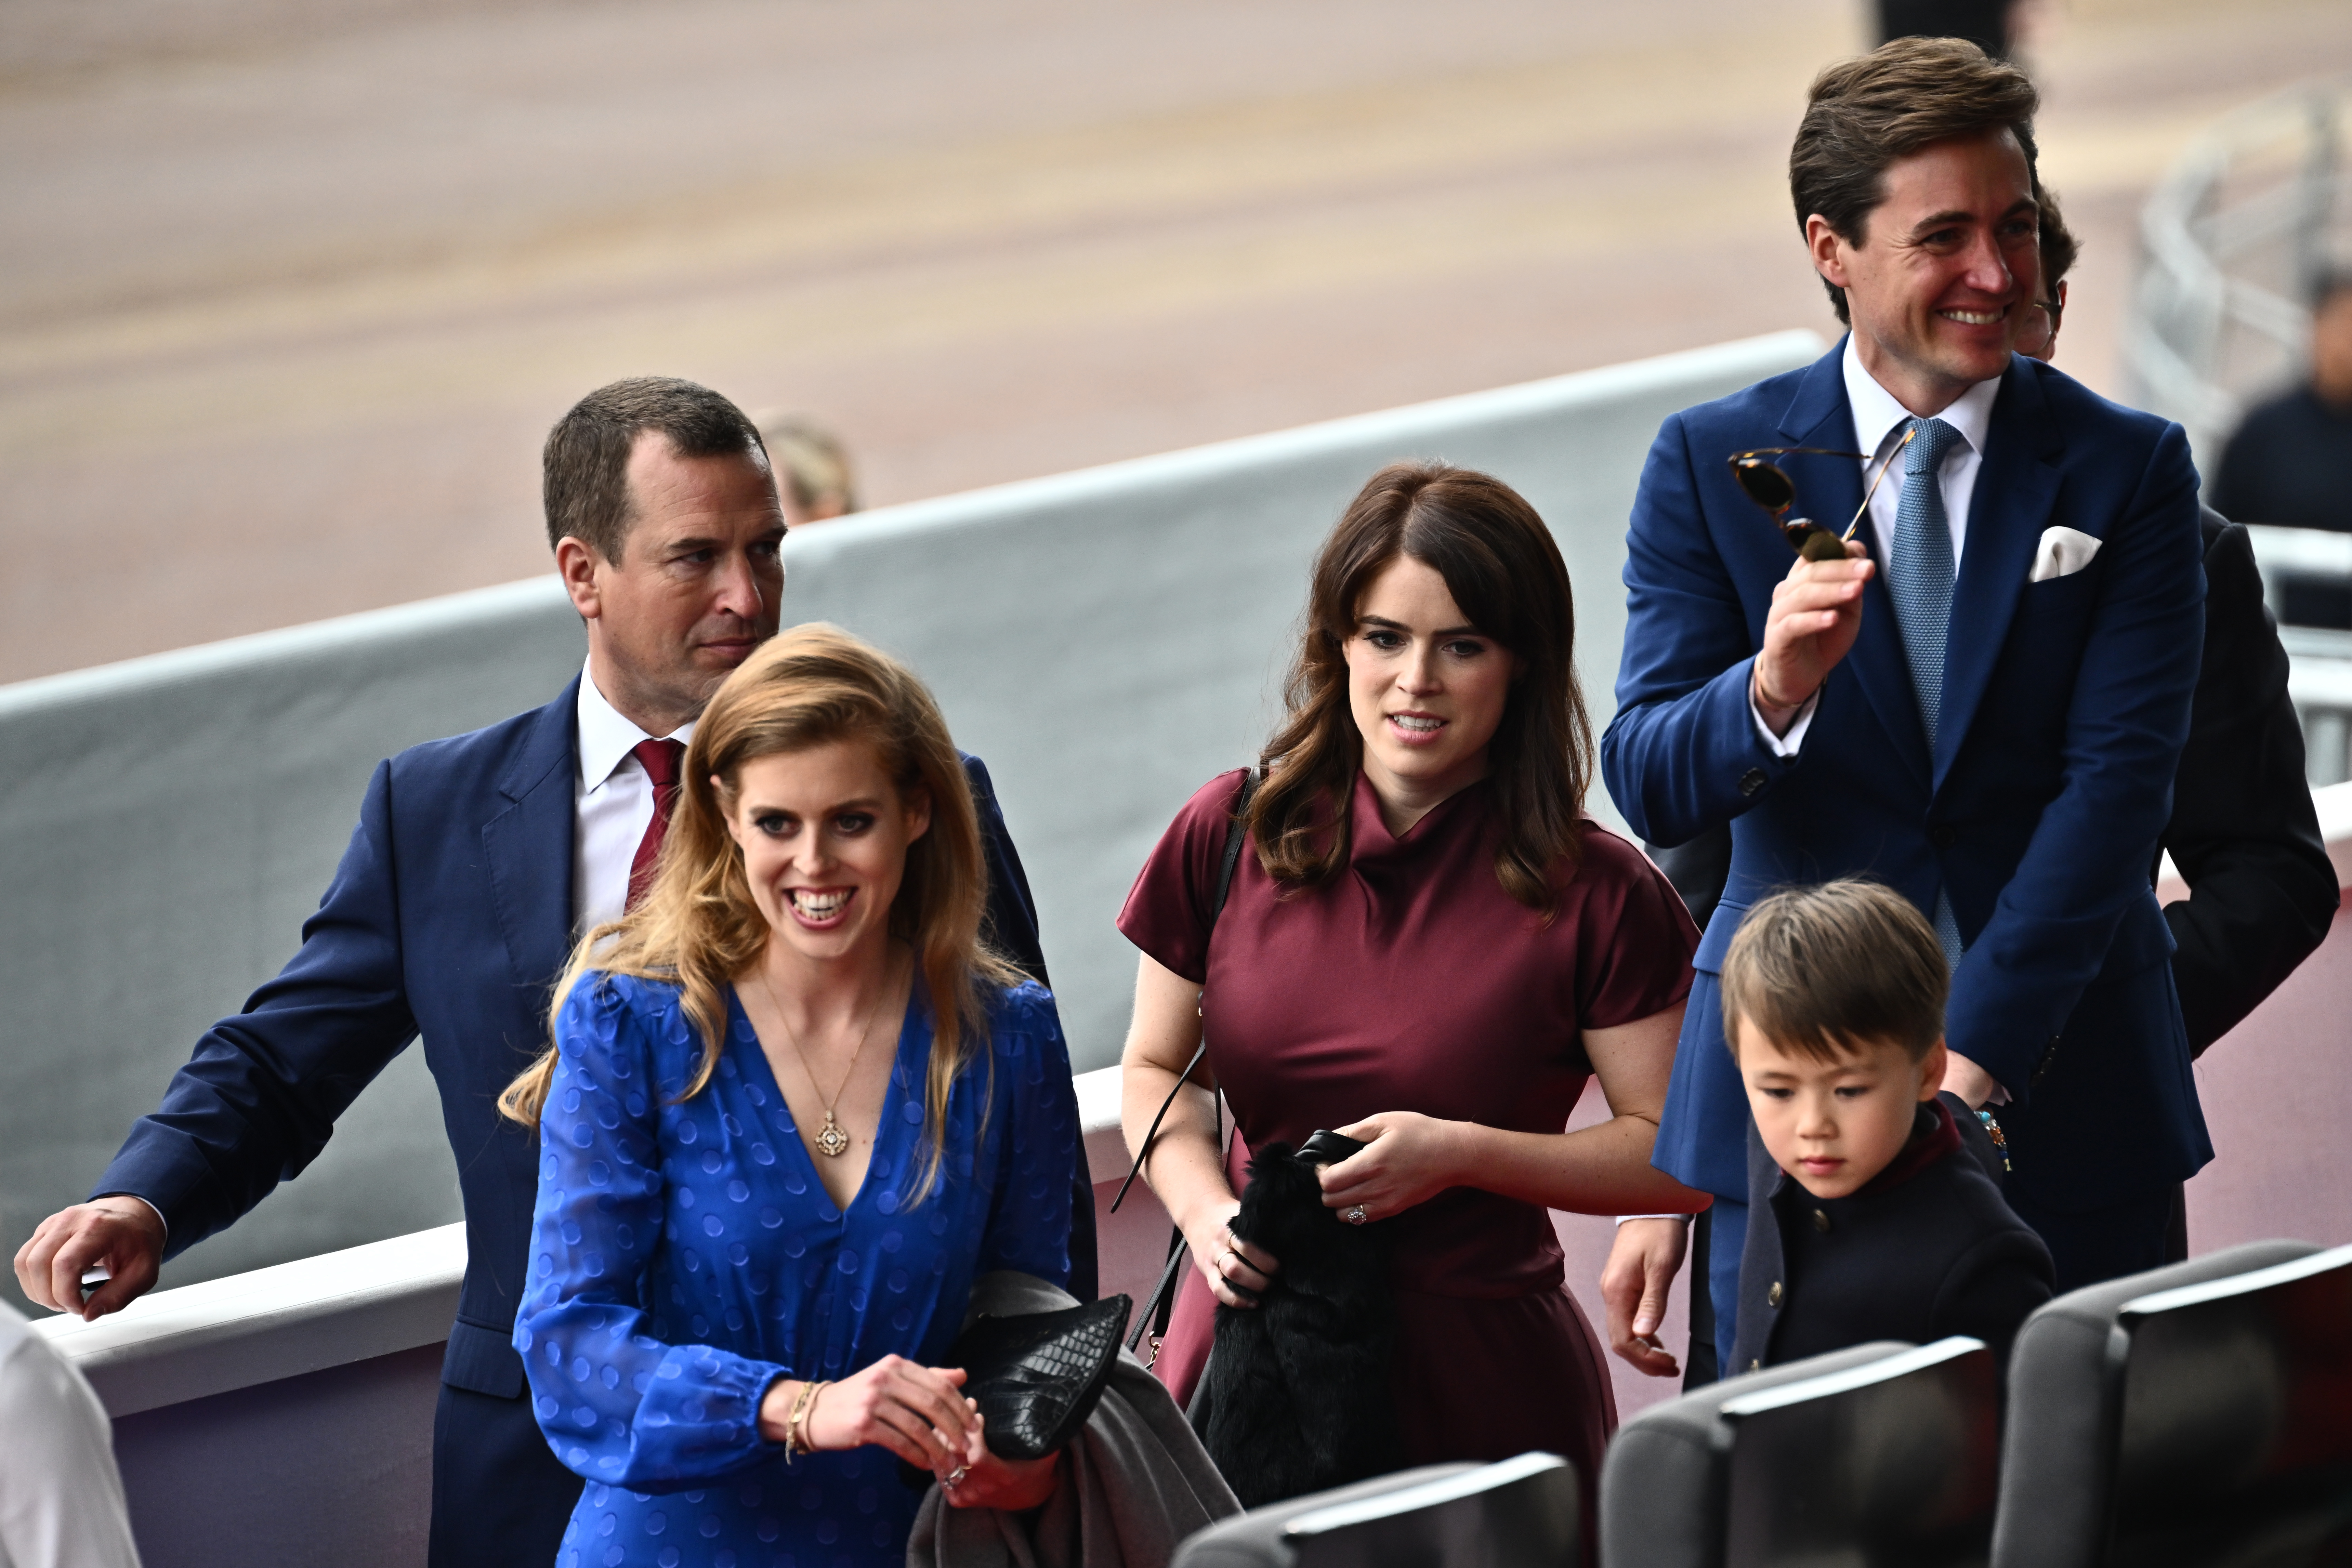 La princesa Beatrice, la princesa Eugenie y Edoardo Mapelli Mozzi asisten al Jubileo de Platino, celebrando el 70 aniversario de la llegada al trono de la Reina Elizabeth II, el 5 de junio de 2022, en Londres, Inglaterra. | Foto: Getty Images